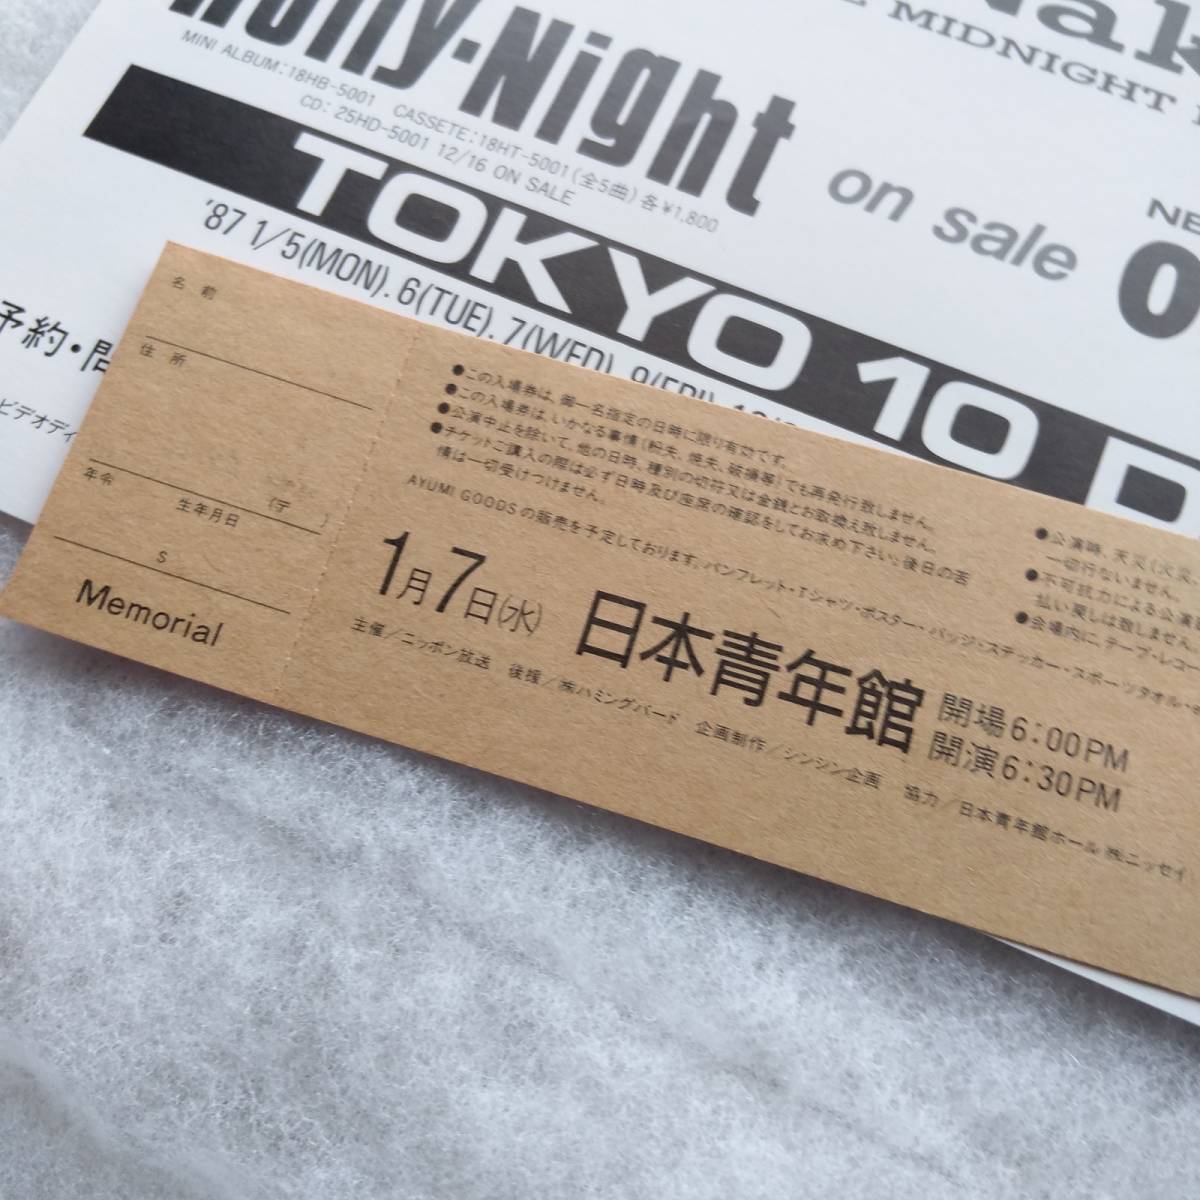 中村あゆみ 1987 抱きしめたい TOKYO 10 DAYS ツアーパンフ(ポスターブック) メモリアルチケット付き 送料込み_画像7